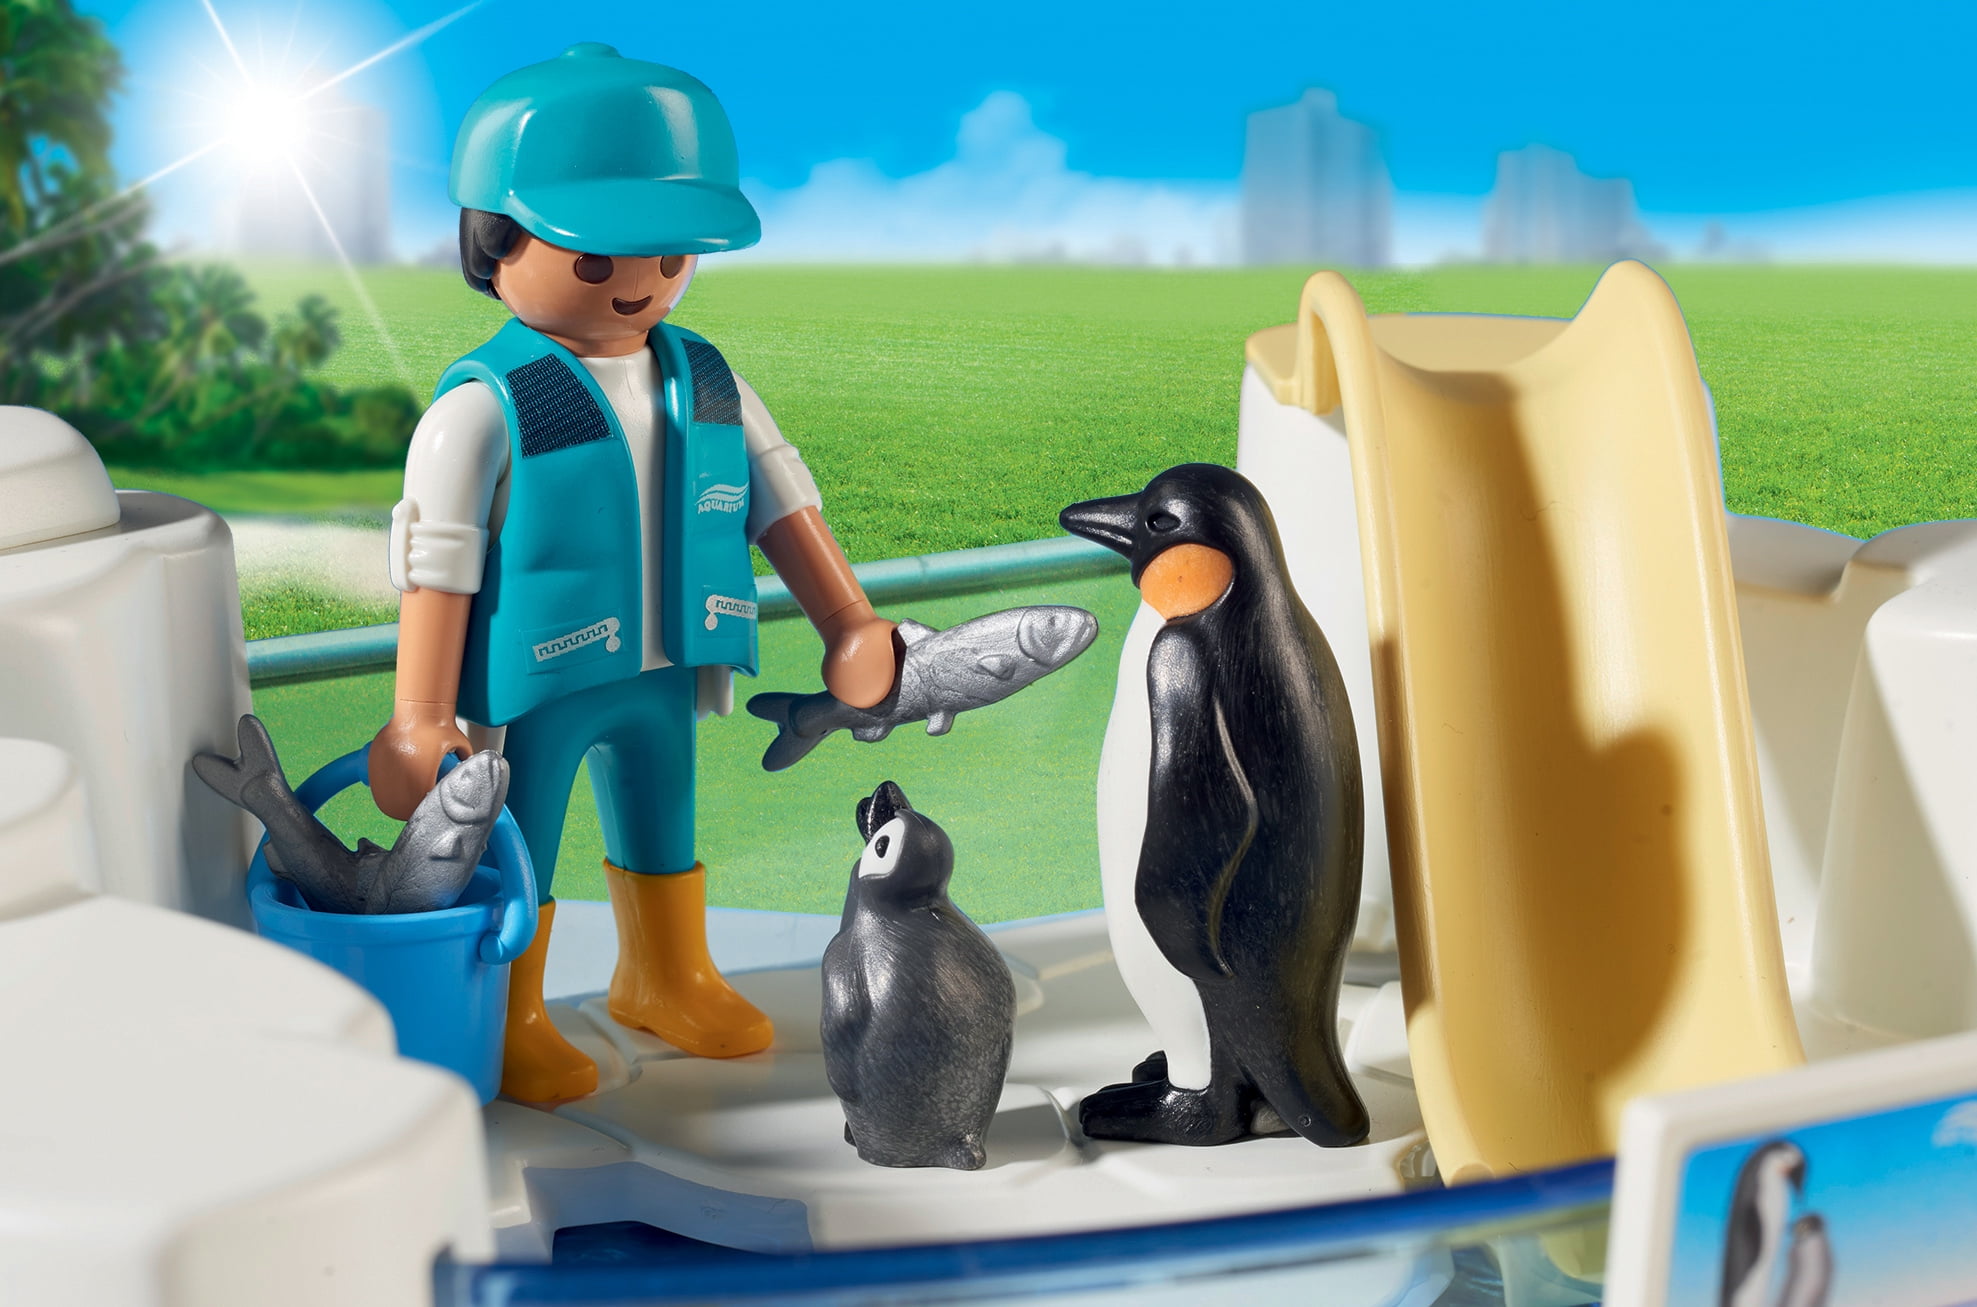 penguin enclosure playmobil